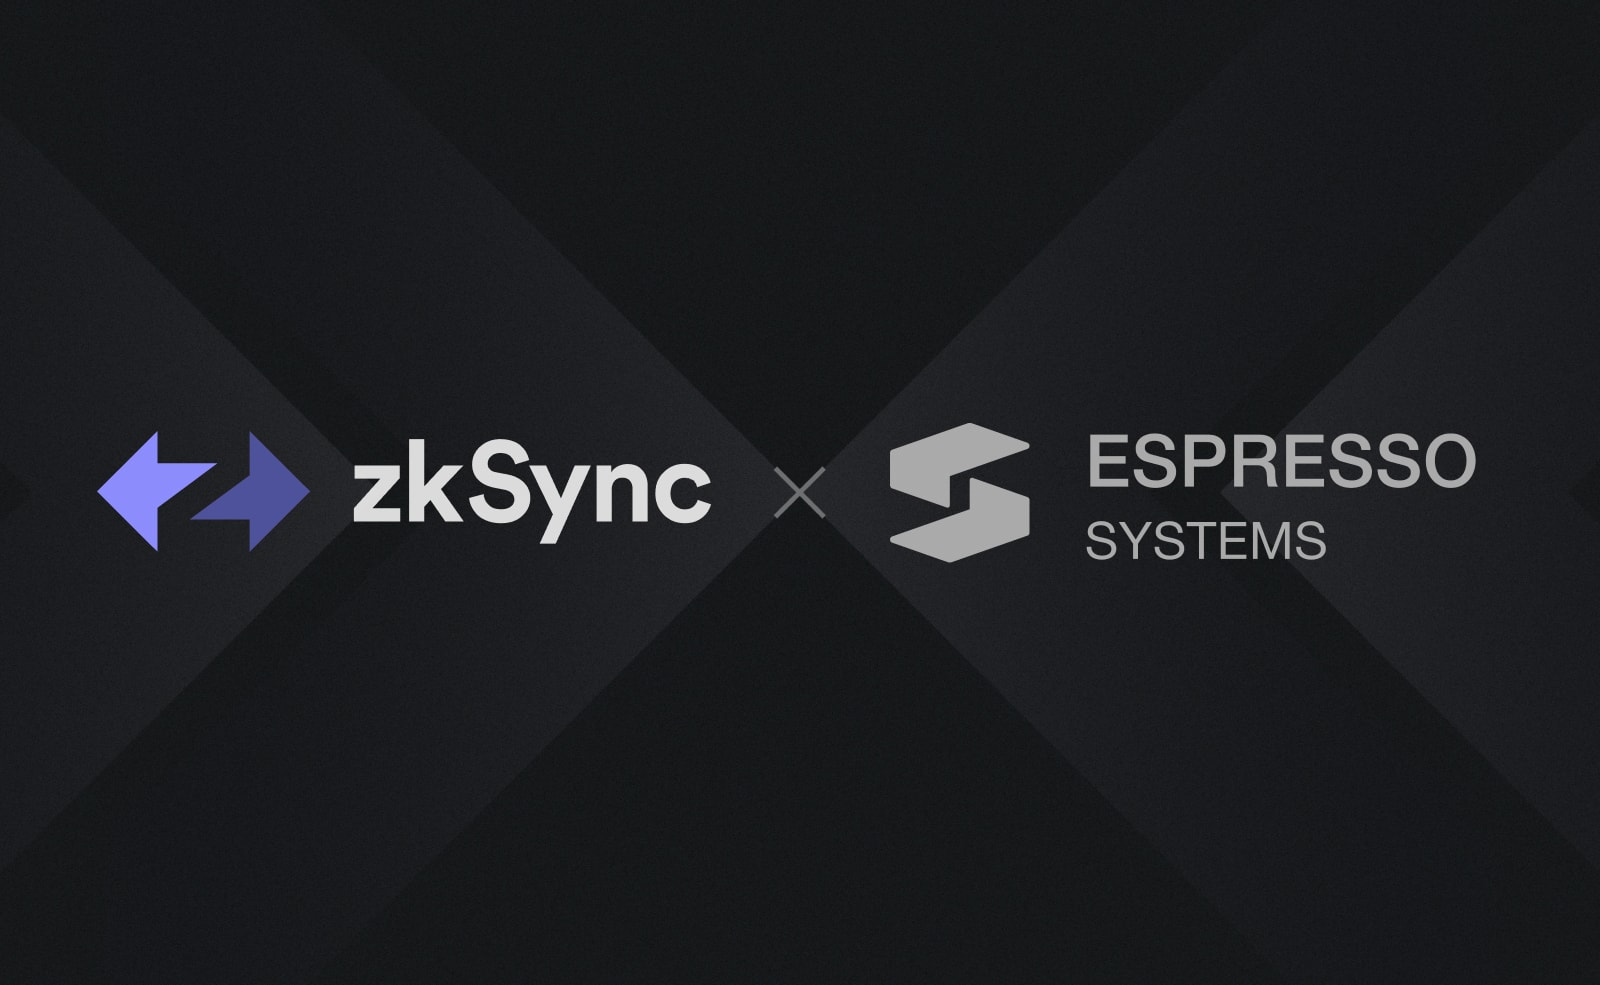 zkSync стал партнером Espresso Systems: они развернут экосистему приватных платежей. Заглавный коллаж новости.